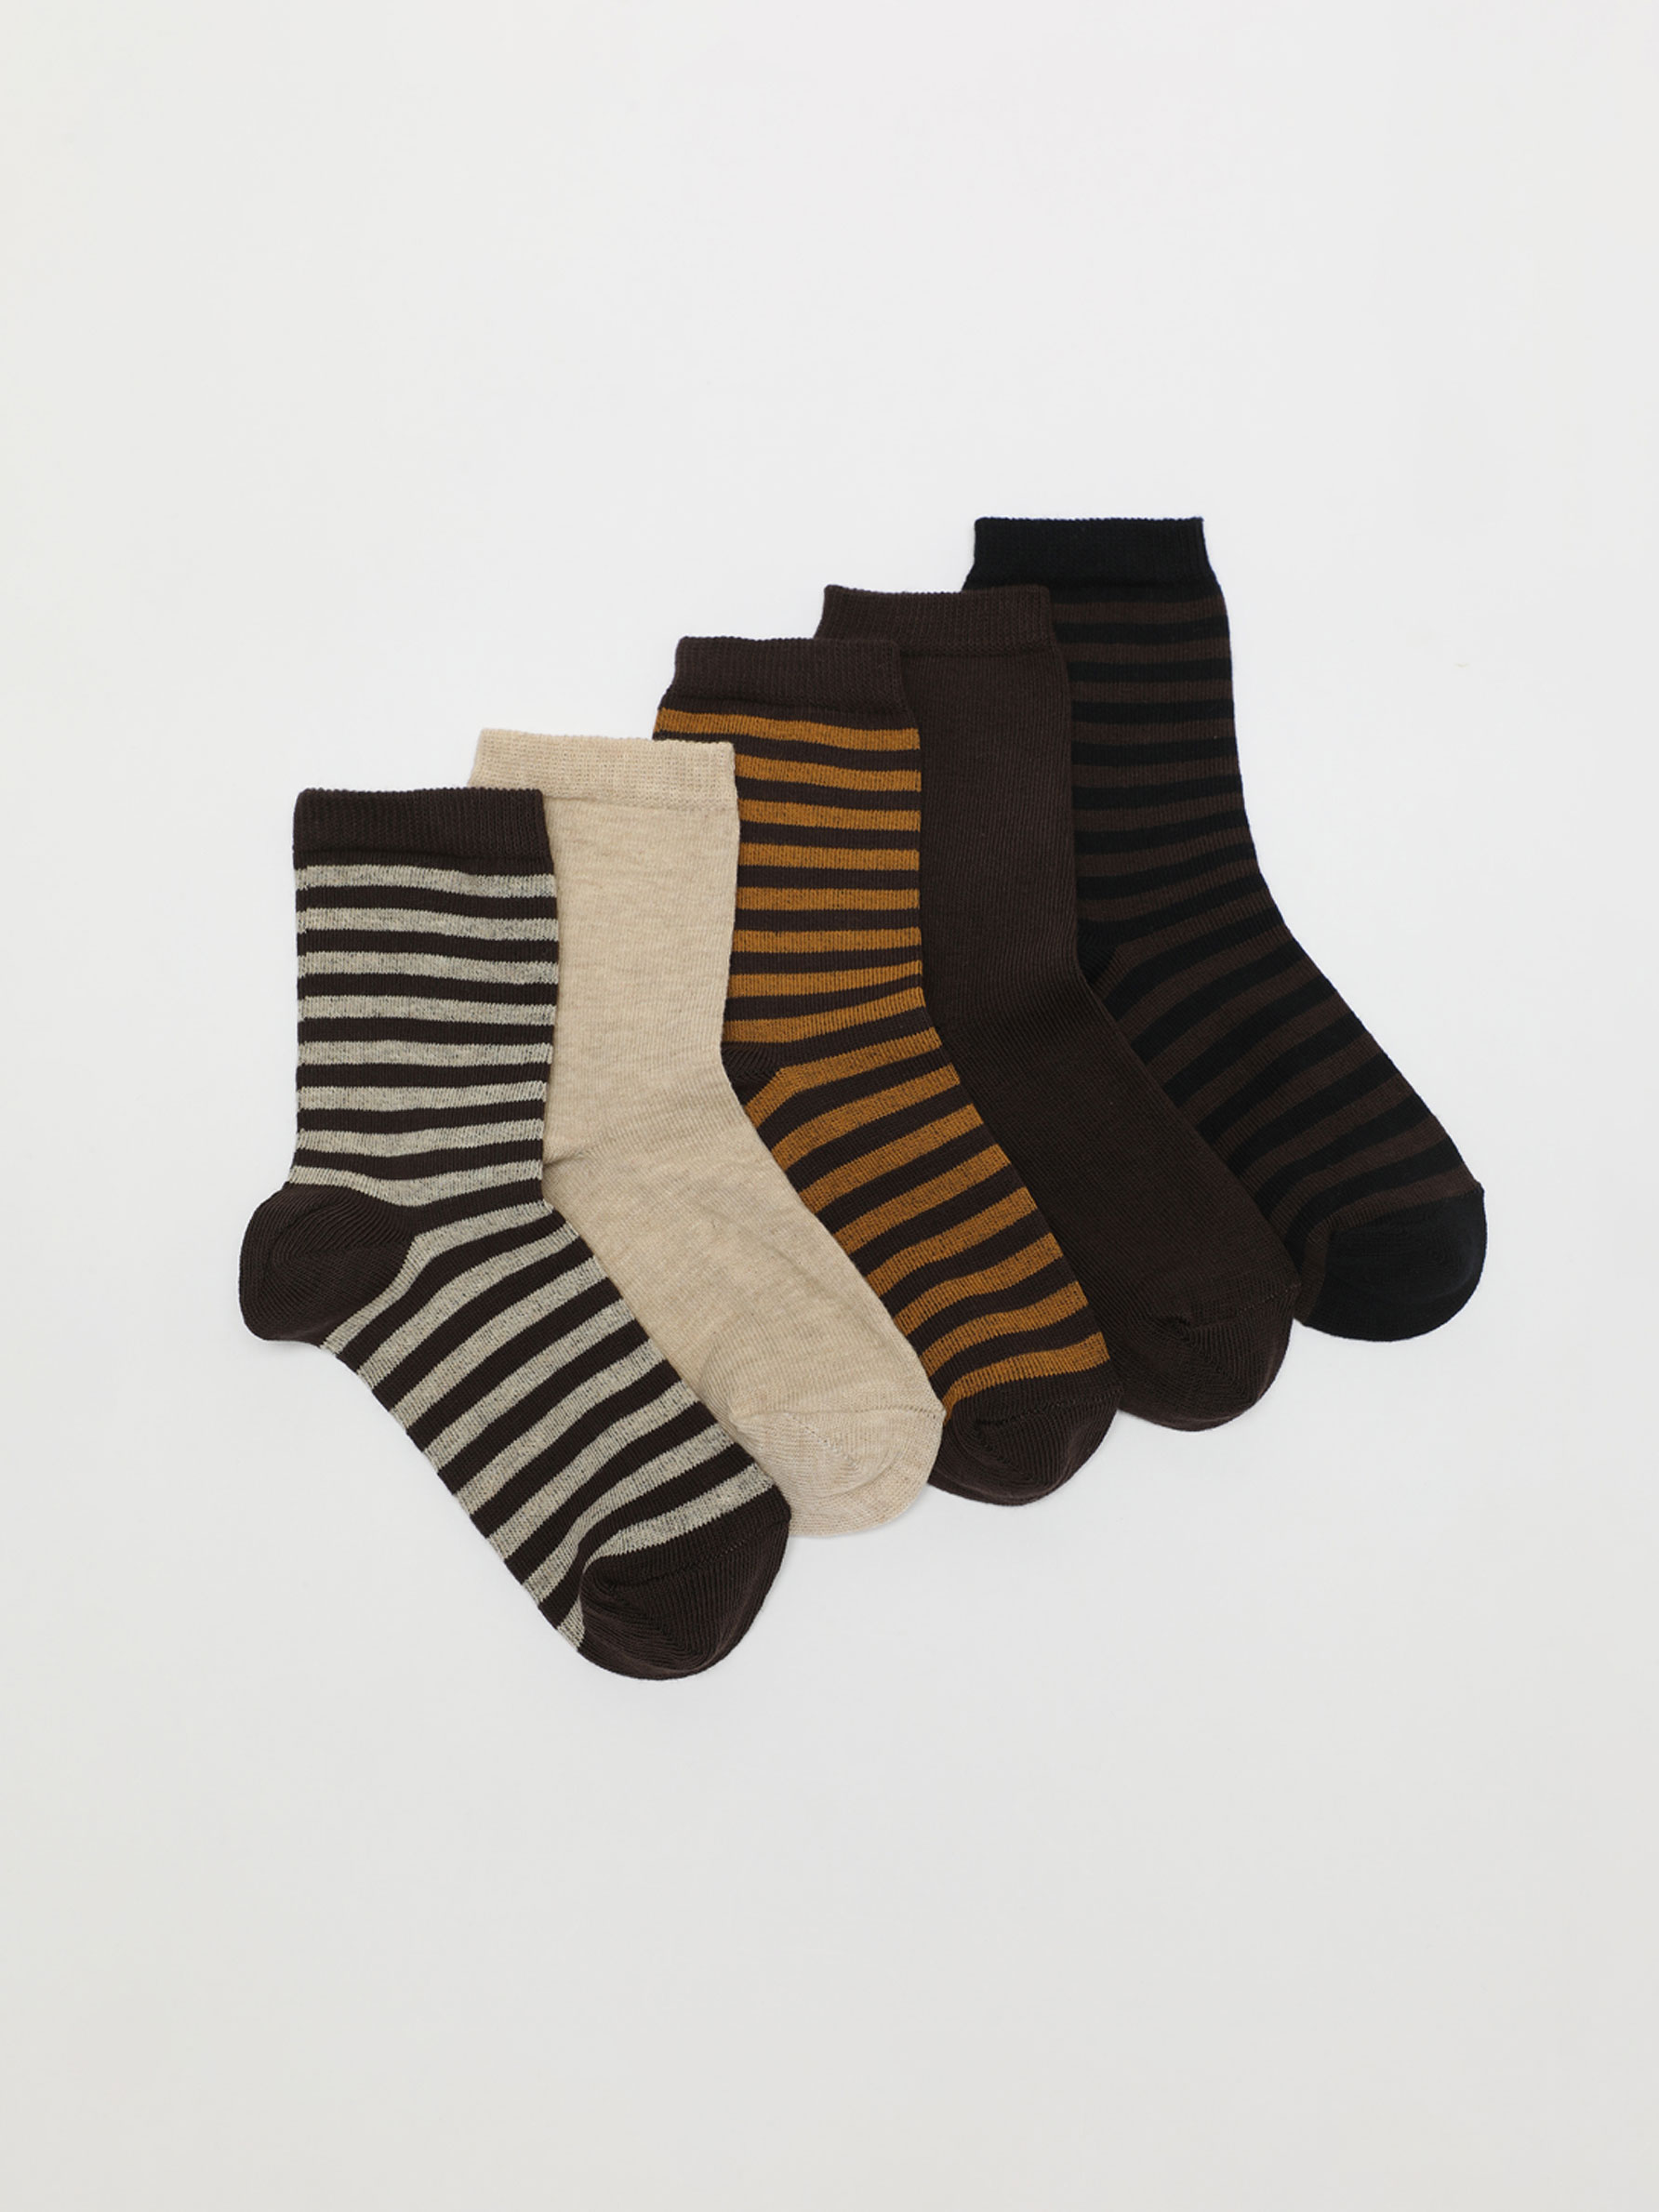 Set Of 5 Printed Cotton Socks Luisaviaroma Boys Clothing Underwear Socks 